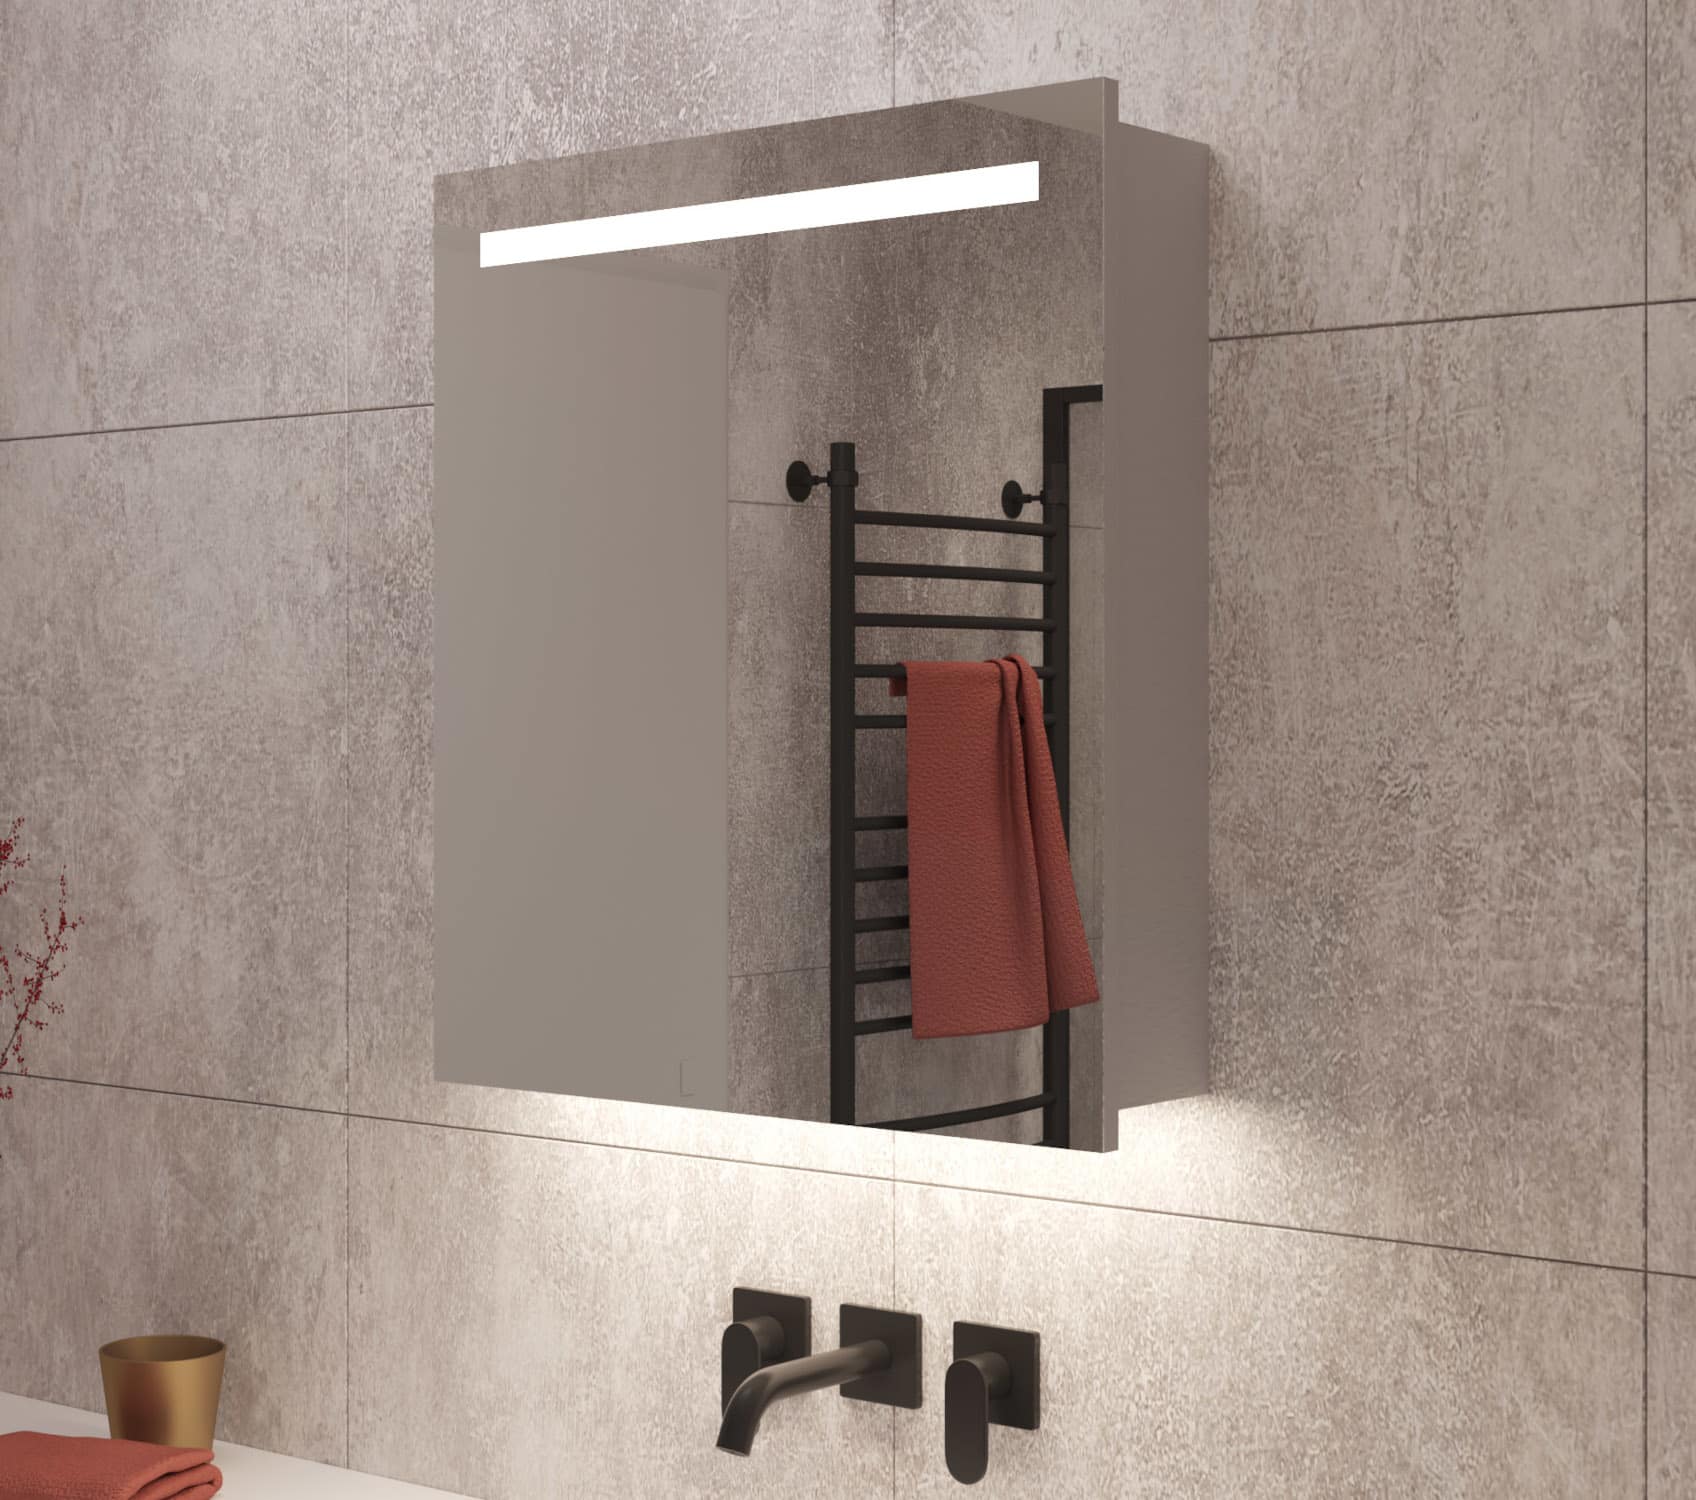 Deze aluminium badkamerspiegelkast is voorzien van verlichting en spiegelverwarming in beide deuren, handig!